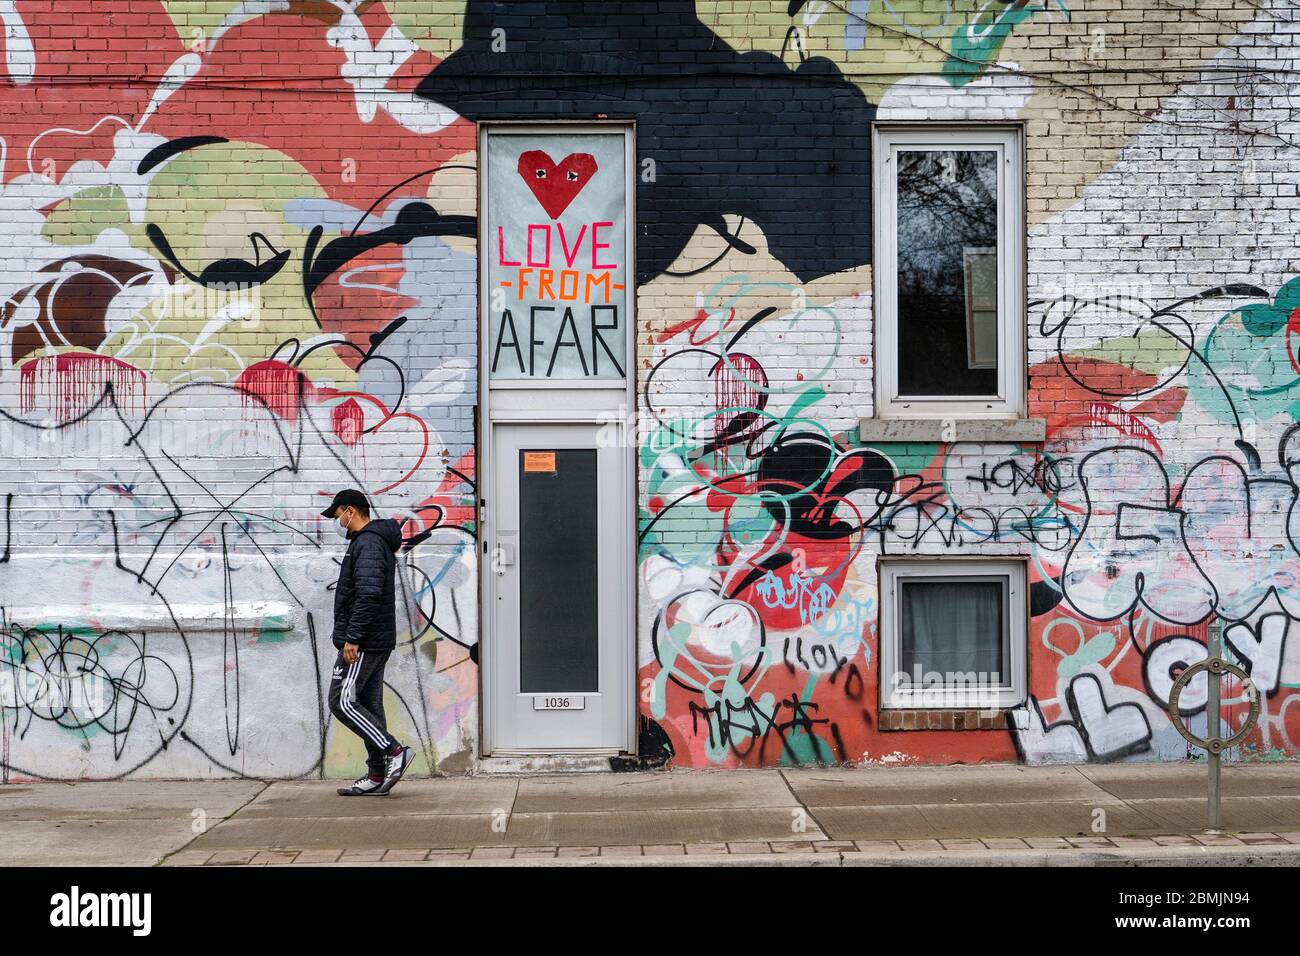 Toronto, Kanada, ein Mann mit Gesichtsmaske geht vor einer bunten Wand mit sozialen Zeichen, die während der Coronavirus-Pandemie zum Thema „Distancing“ werden. Stockfoto